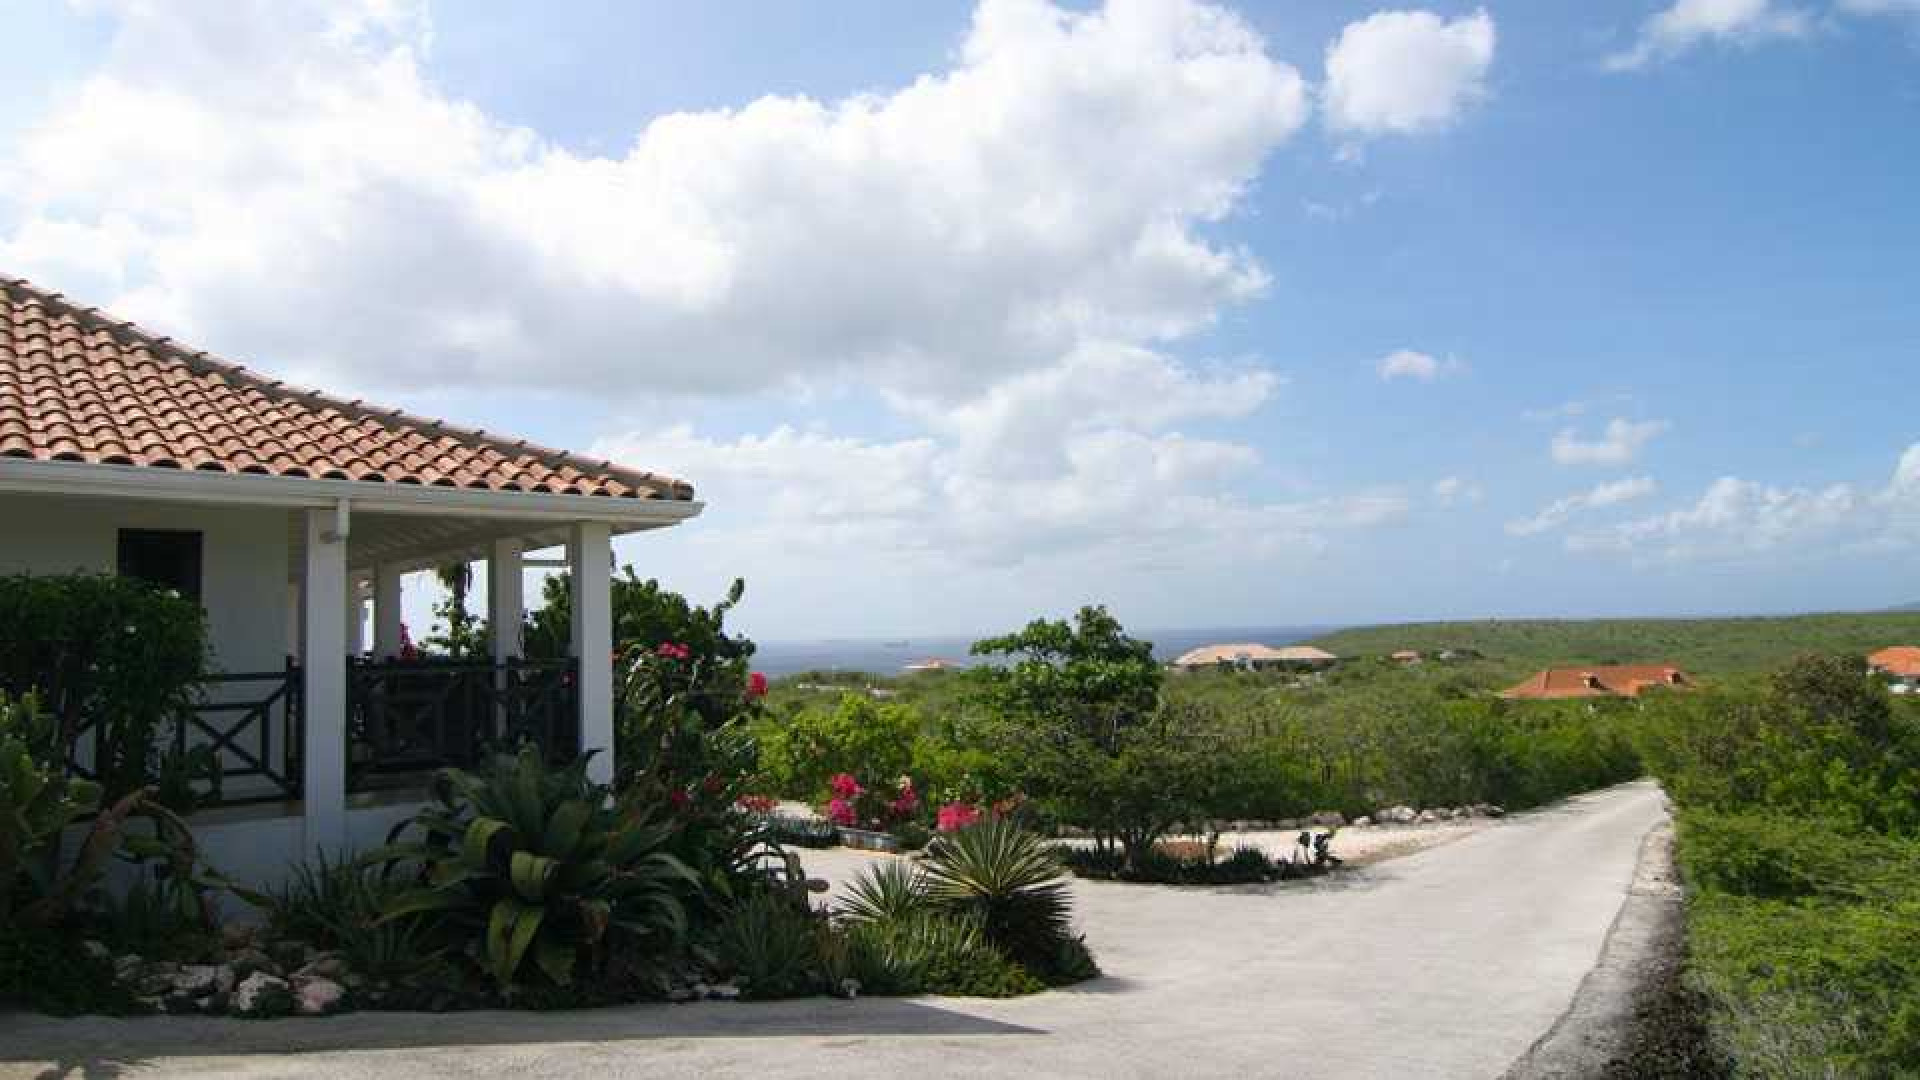 Miljoenenvilla Barry Hay op Curacao verkocht. Zie foto's 12